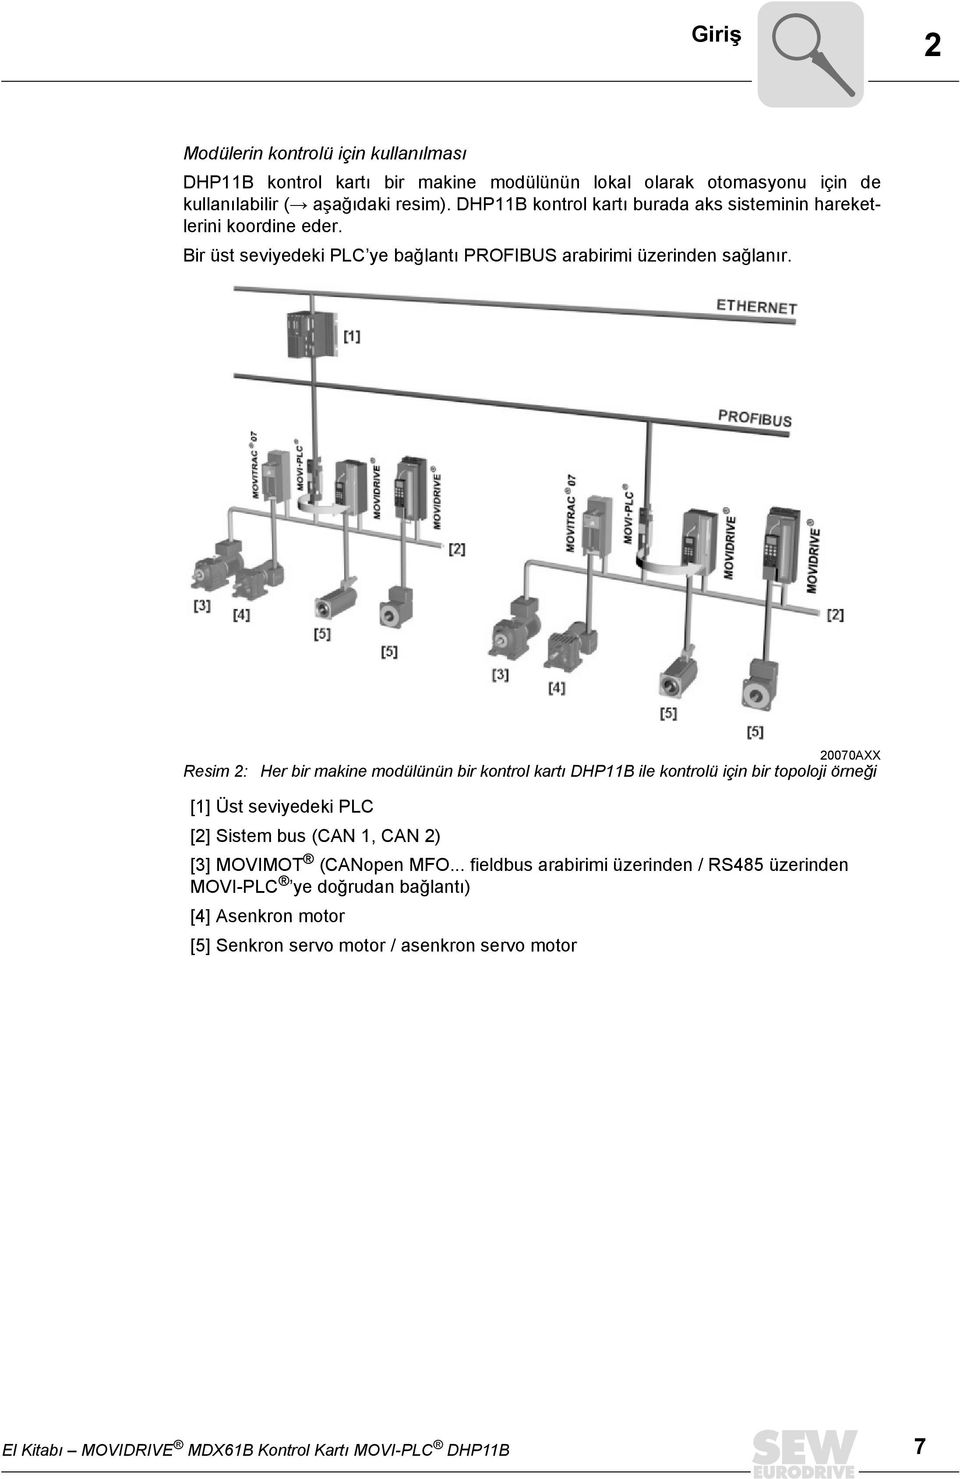 Resim 2: 27AXX Her bir makine modülünün bir kontrol kartı DHP11B ile kontrolü için bir topoloji örneği [1] Üst seviyedeki PLC [2] Sistem bus (CAN 1, CAN 2) [3] MOVIMOT